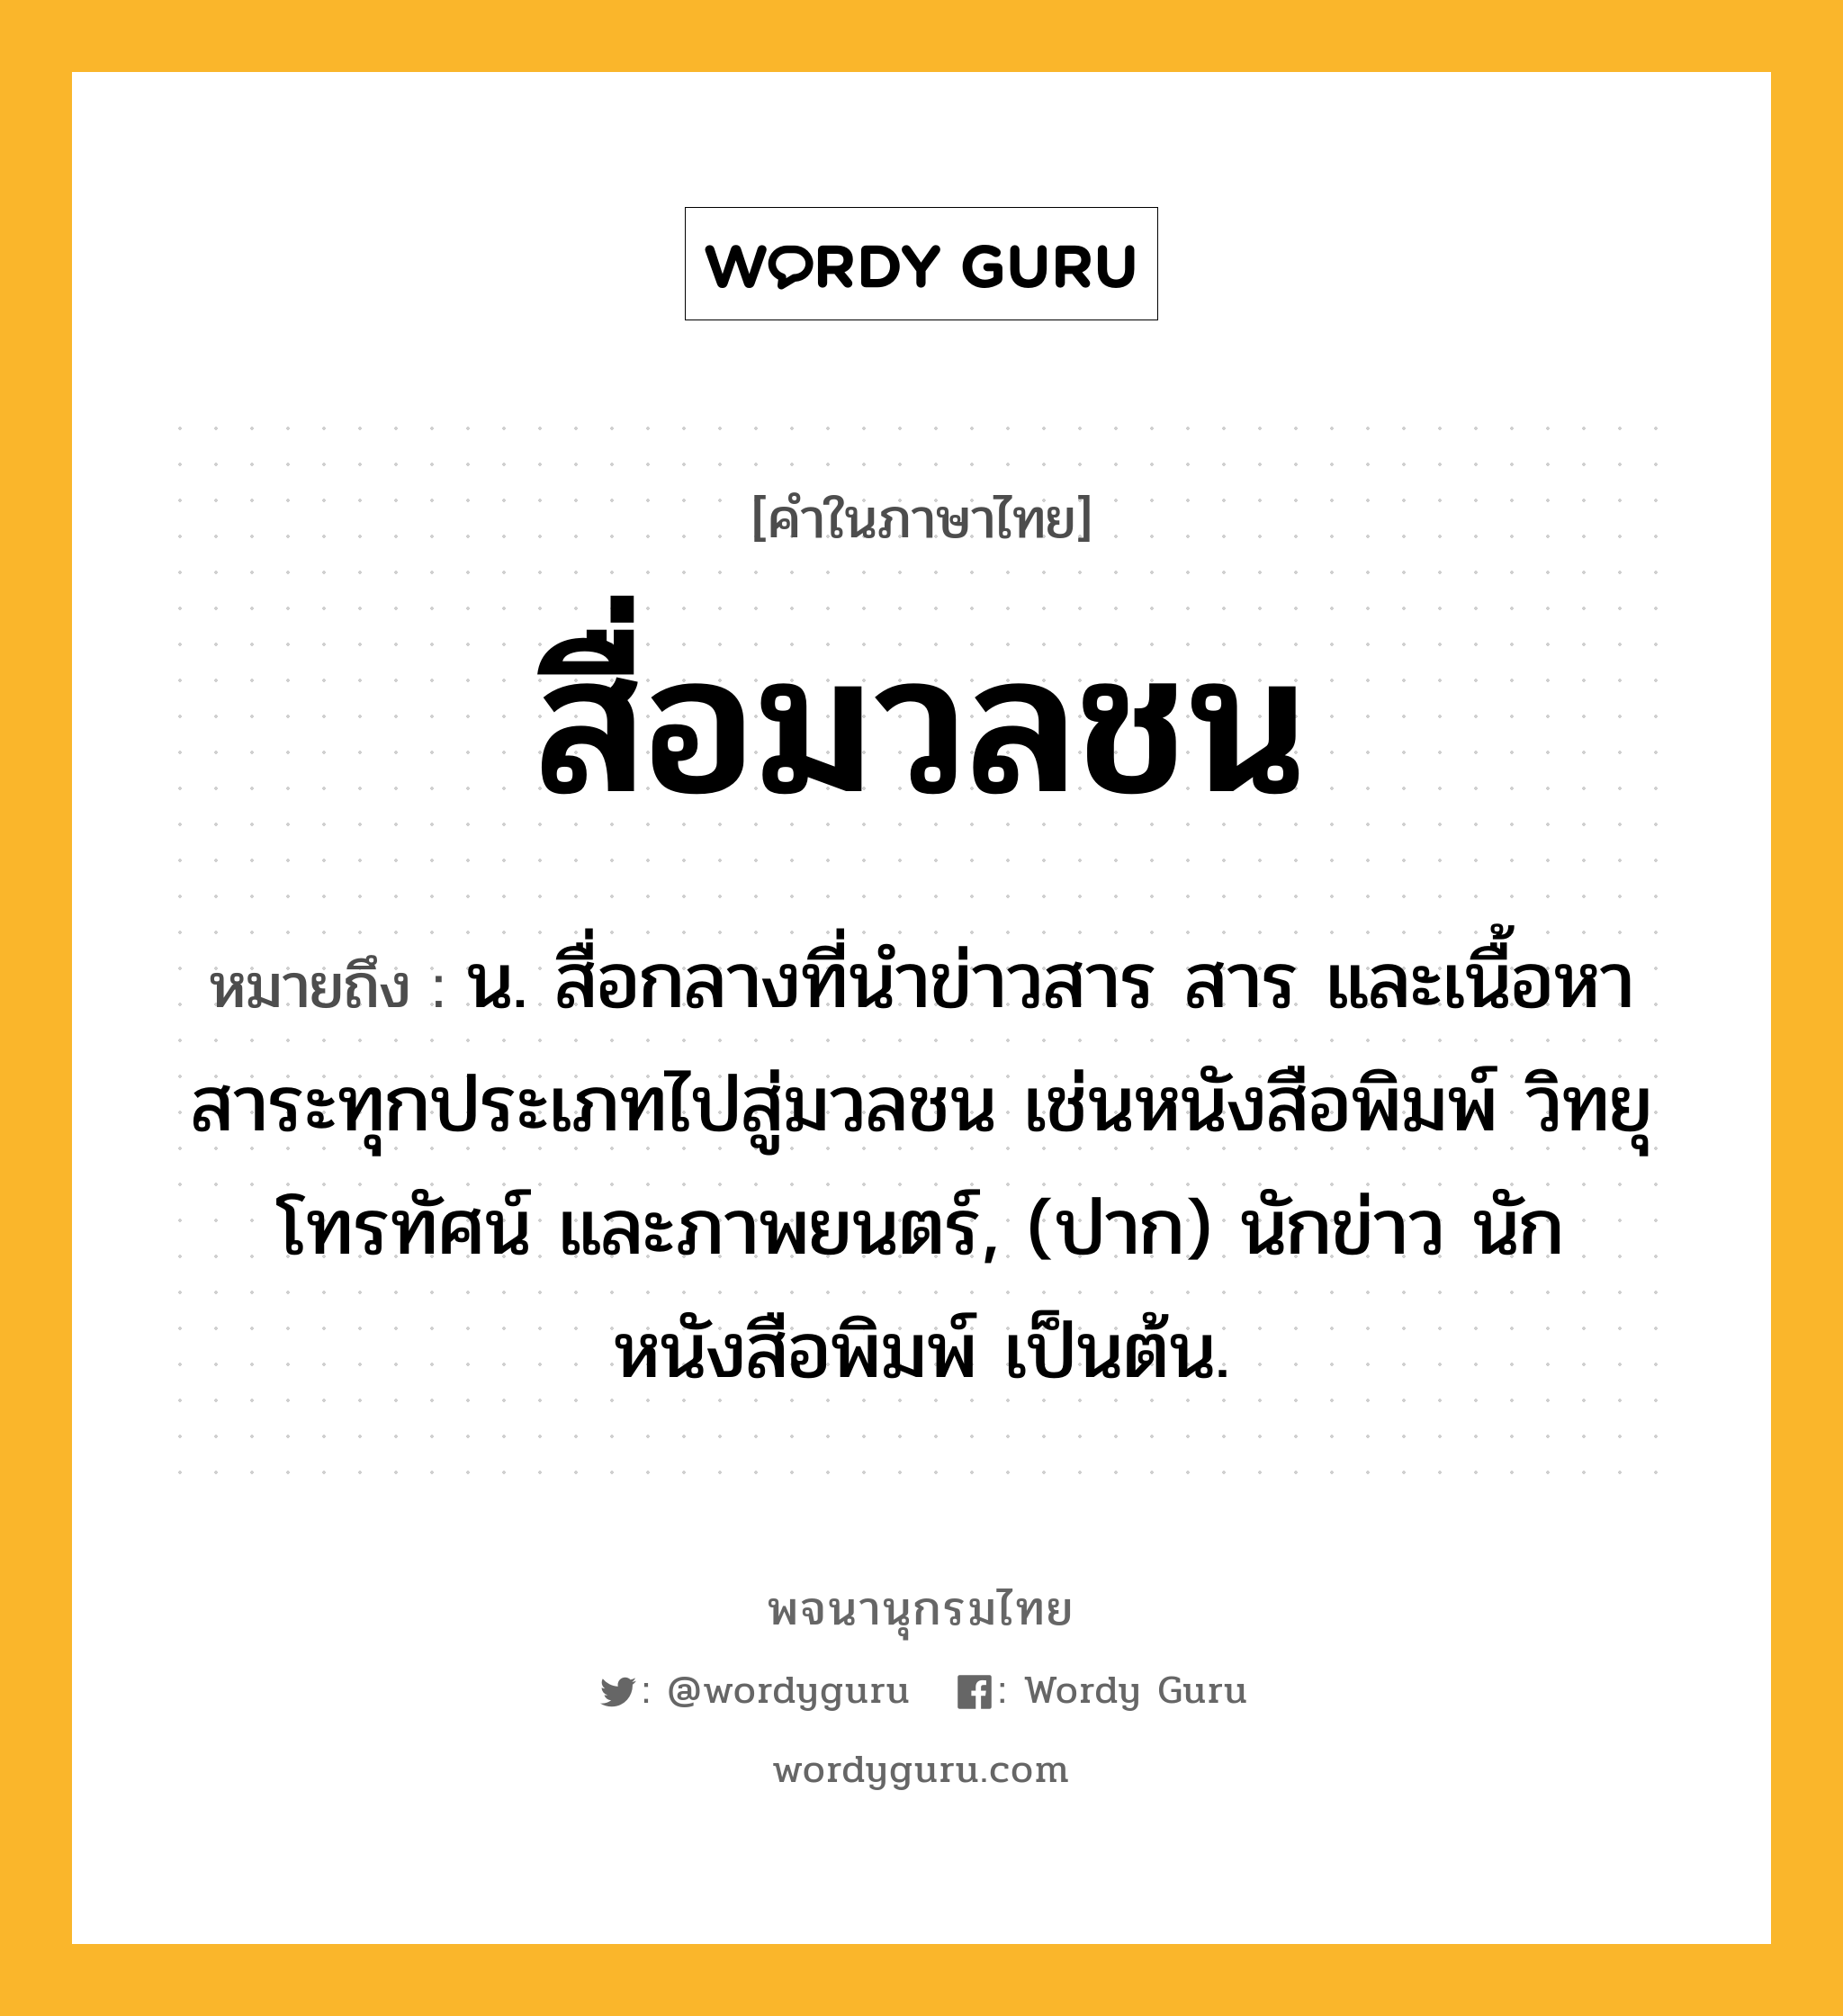 สื่อมวลชน ความหมาย หมายถึงอะไร?, คำในภาษาไทย สื่อมวลชน หมายถึง น. สื่อกลางที่นำข่าวสาร สาร และเนื้อหาสาระทุกประเภทไปสู่มวลชน เช่นหนังสือพิมพ์ วิทยุ โทรทัศน์ และภาพยนตร์, (ปาก) นักข่าว นักหนังสือพิมพ์ เป็นต้น.